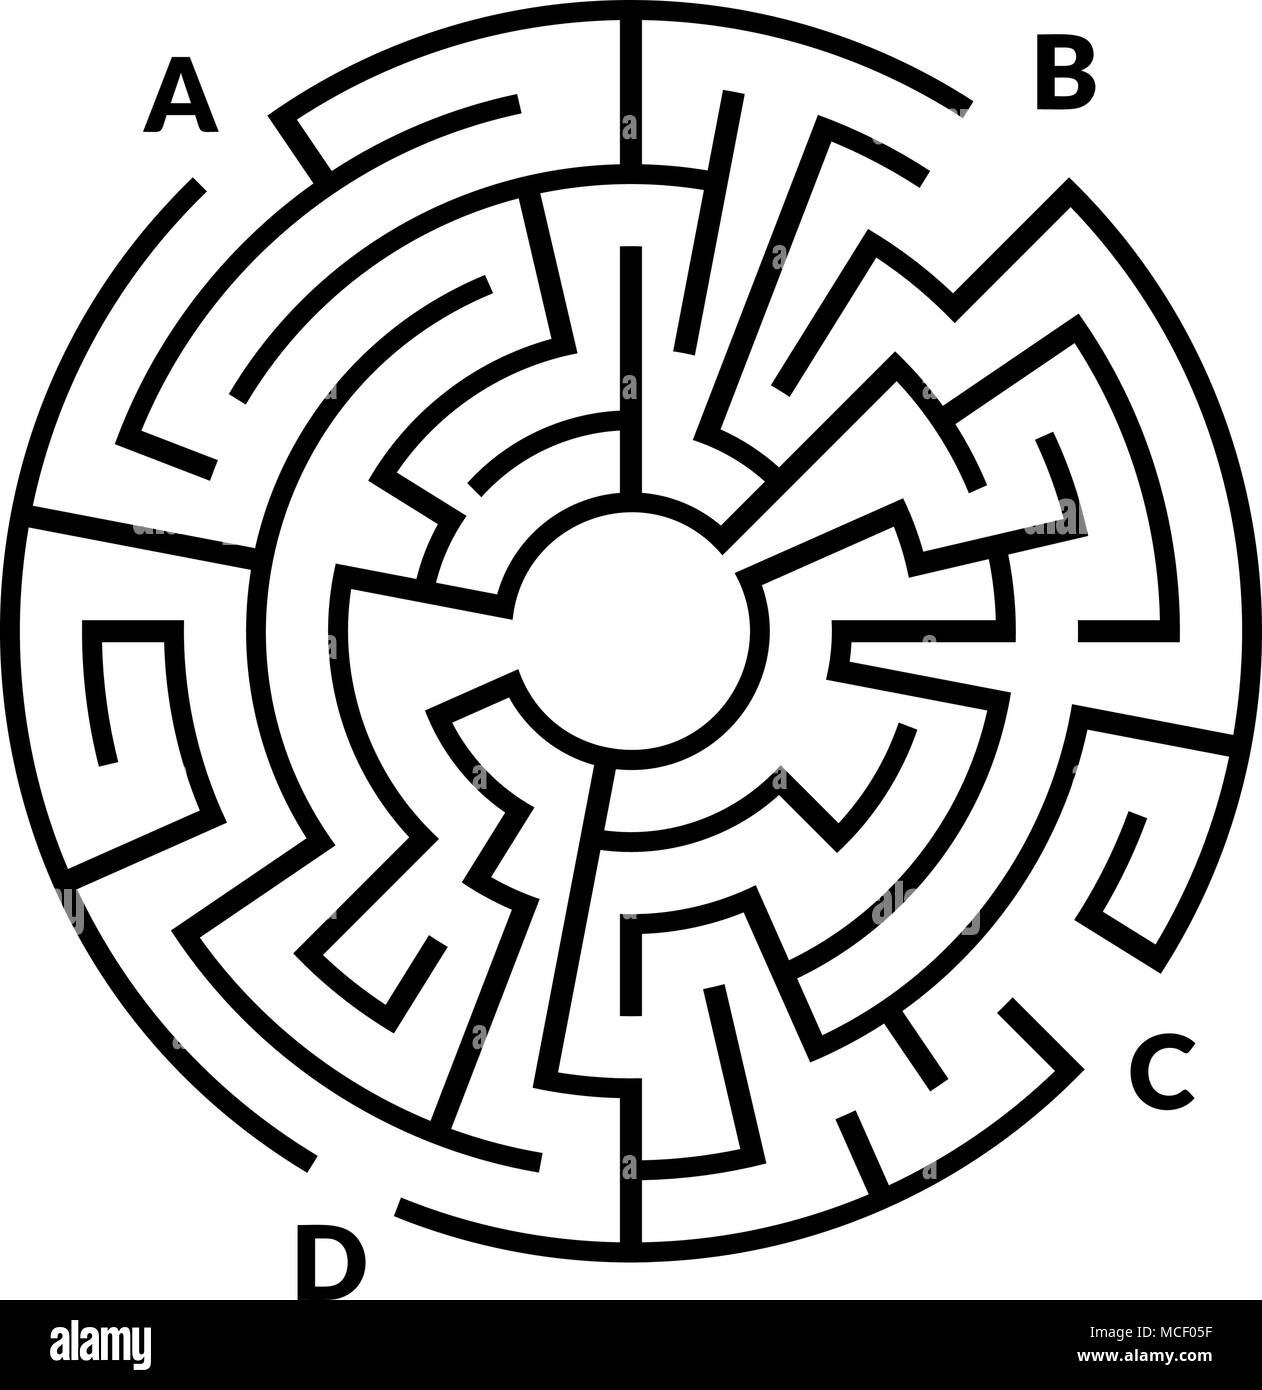 Kreisförmiges Labyrinth Spiel auf weißem Hintergrund Stock Vektor